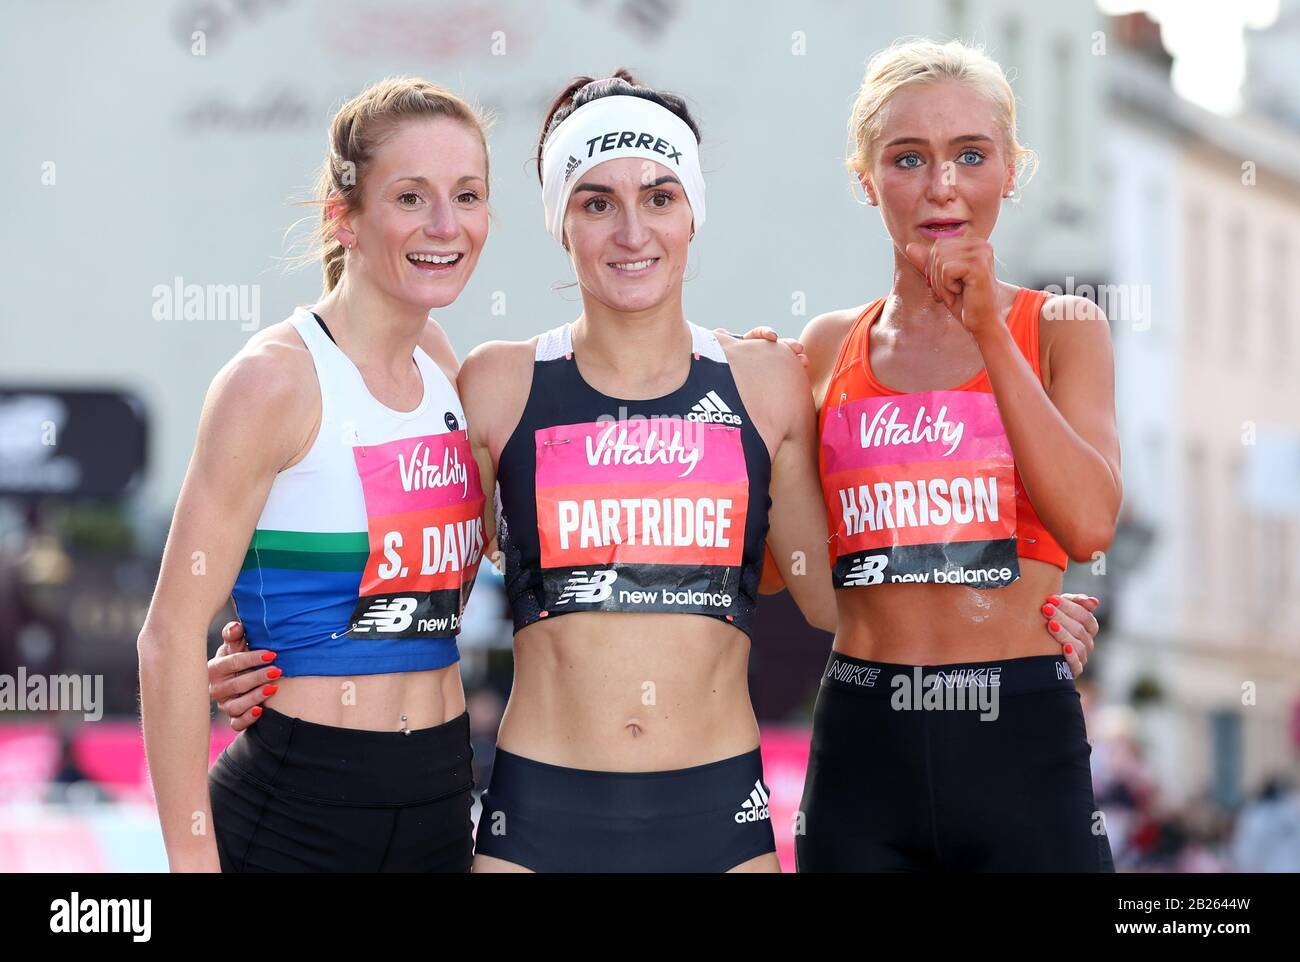 La gagnante Lily Partridge, la deuxième place de Samantha Harrison (à droite) et la troisième place de Stephanie Davis (à gauche) après la course des femmes pendant la grande Moitié vitalité de Londres. Banque D'Images